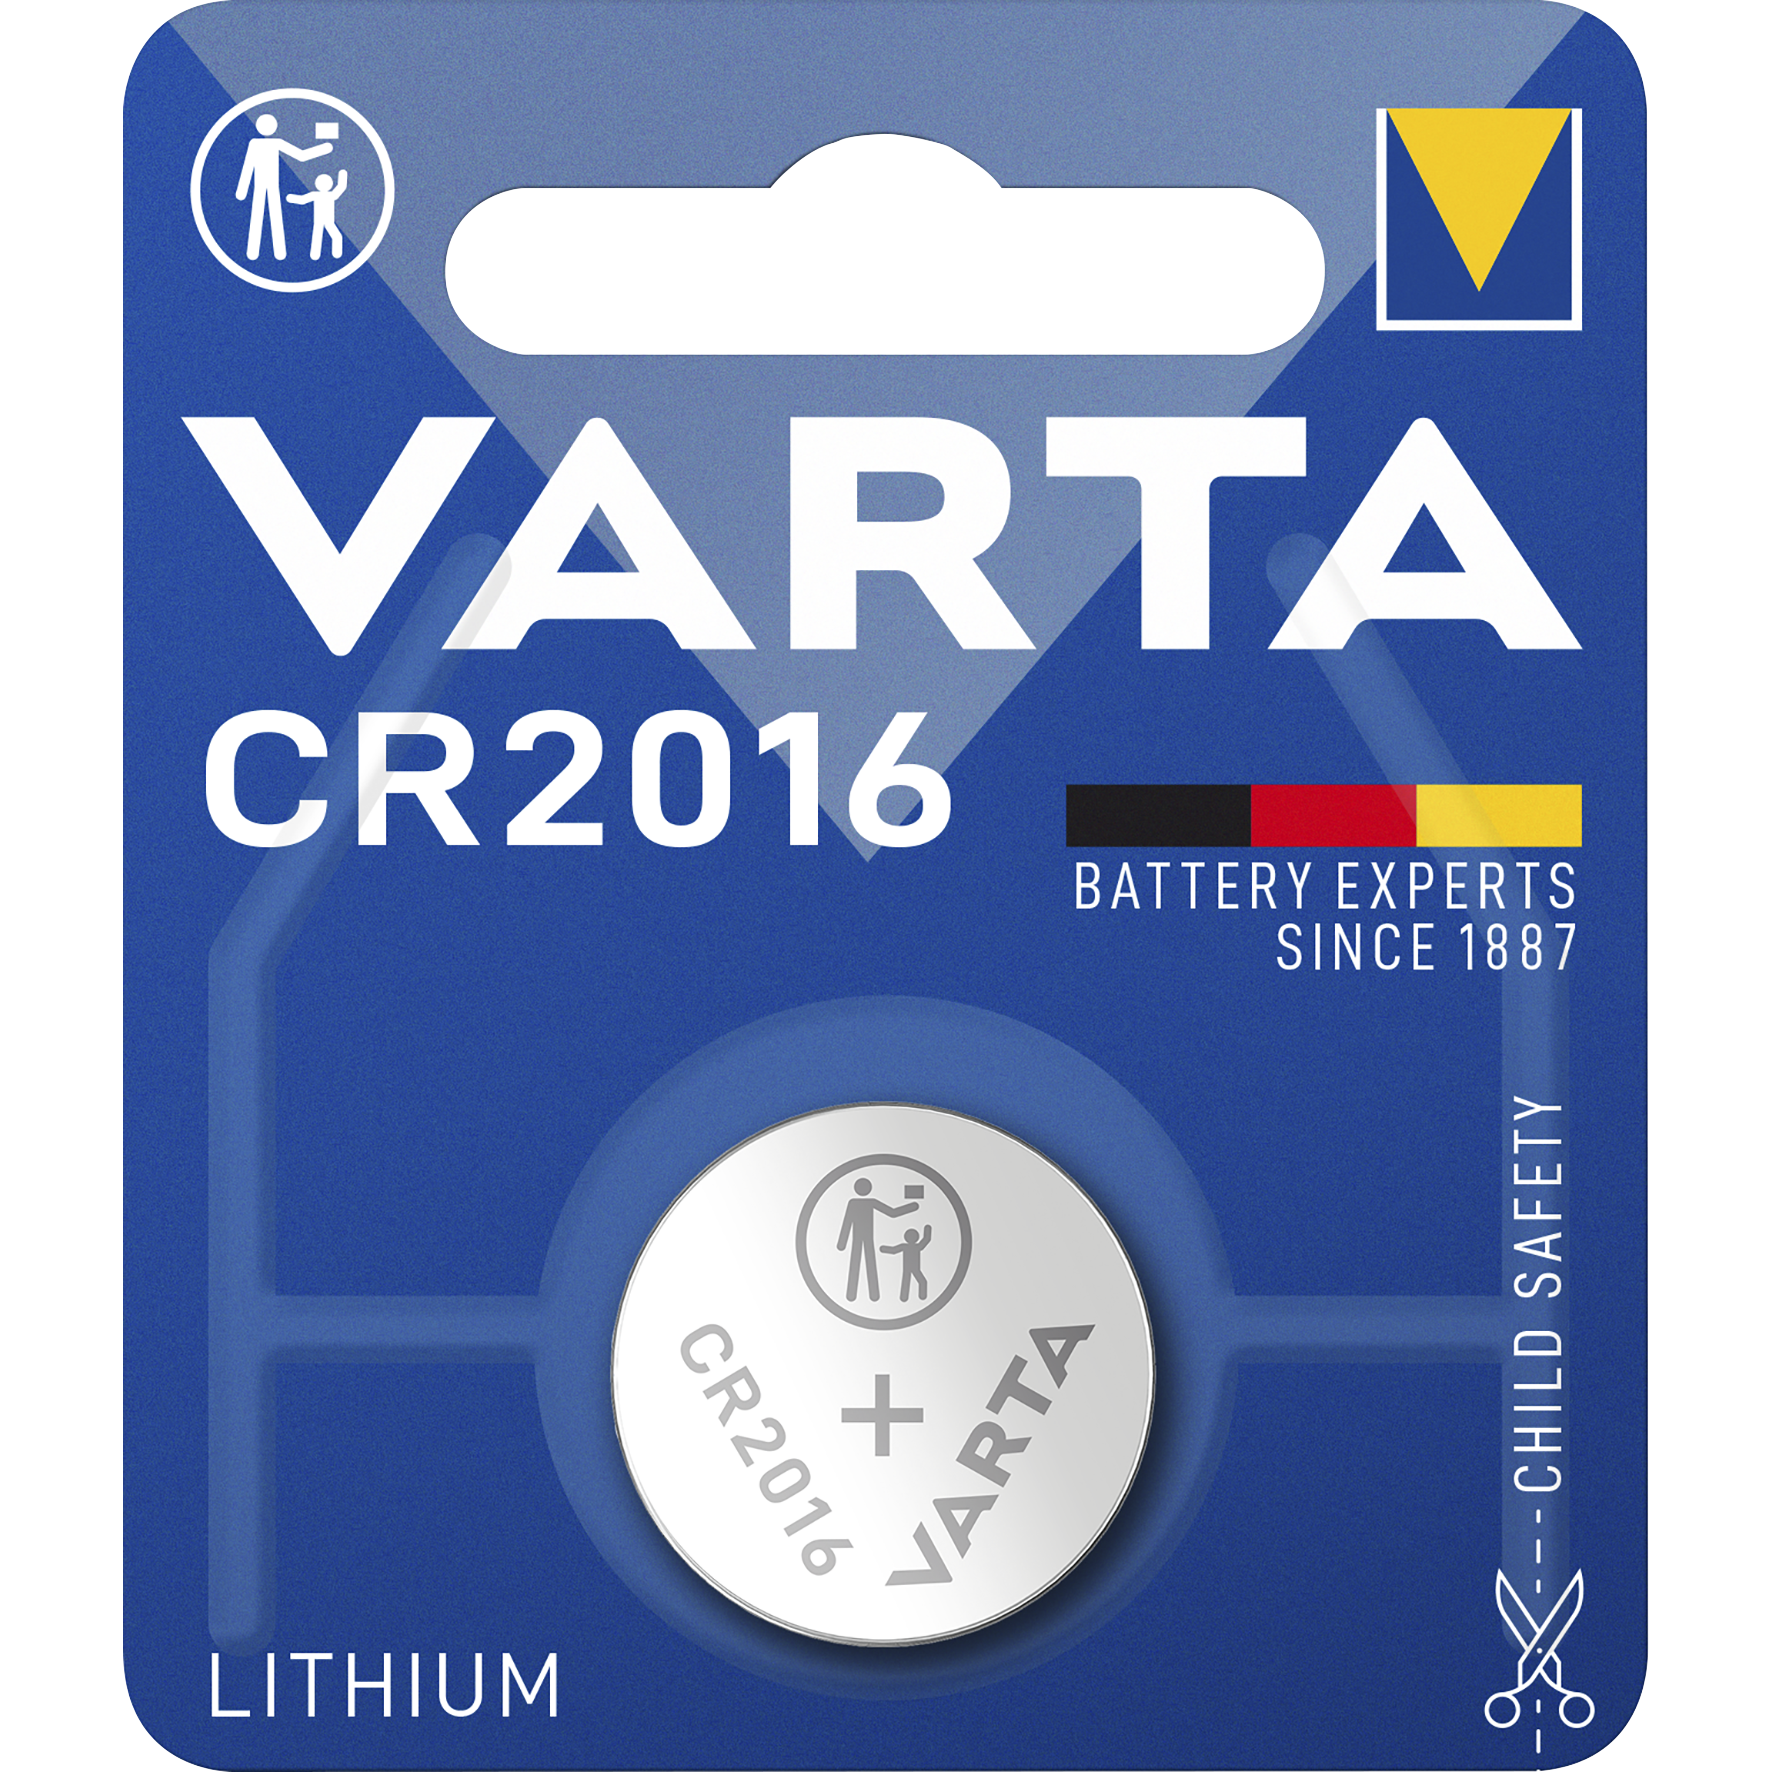 Lithium-Knopfzelle VARTA Electronics, CR 2016, 90mAh, 3V, 1er-Blister